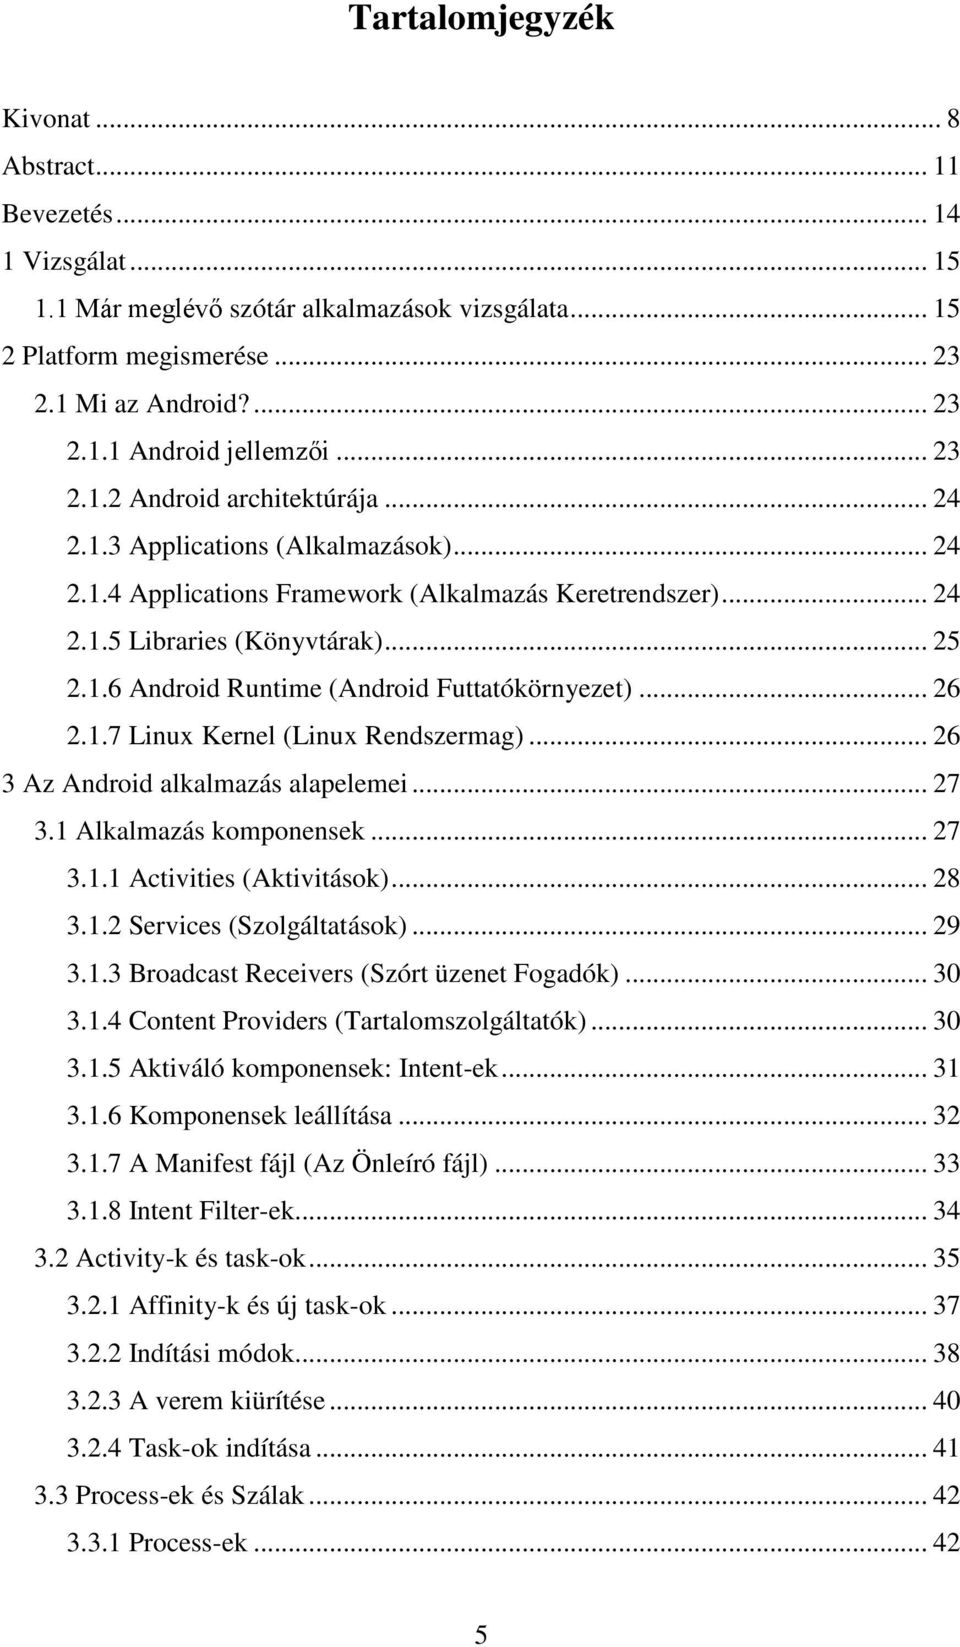 .. 26 2.1.7 Linux Kernel (Linux Rendszermag)... 26 3 Az Android alkalmazás alapelemei... 27 3.1 Alkalmazás komponensek... 27 3.1.1 Activities (Aktivitások)... 28 3.1.2 Services (Szolgáltatások)... 29 3.